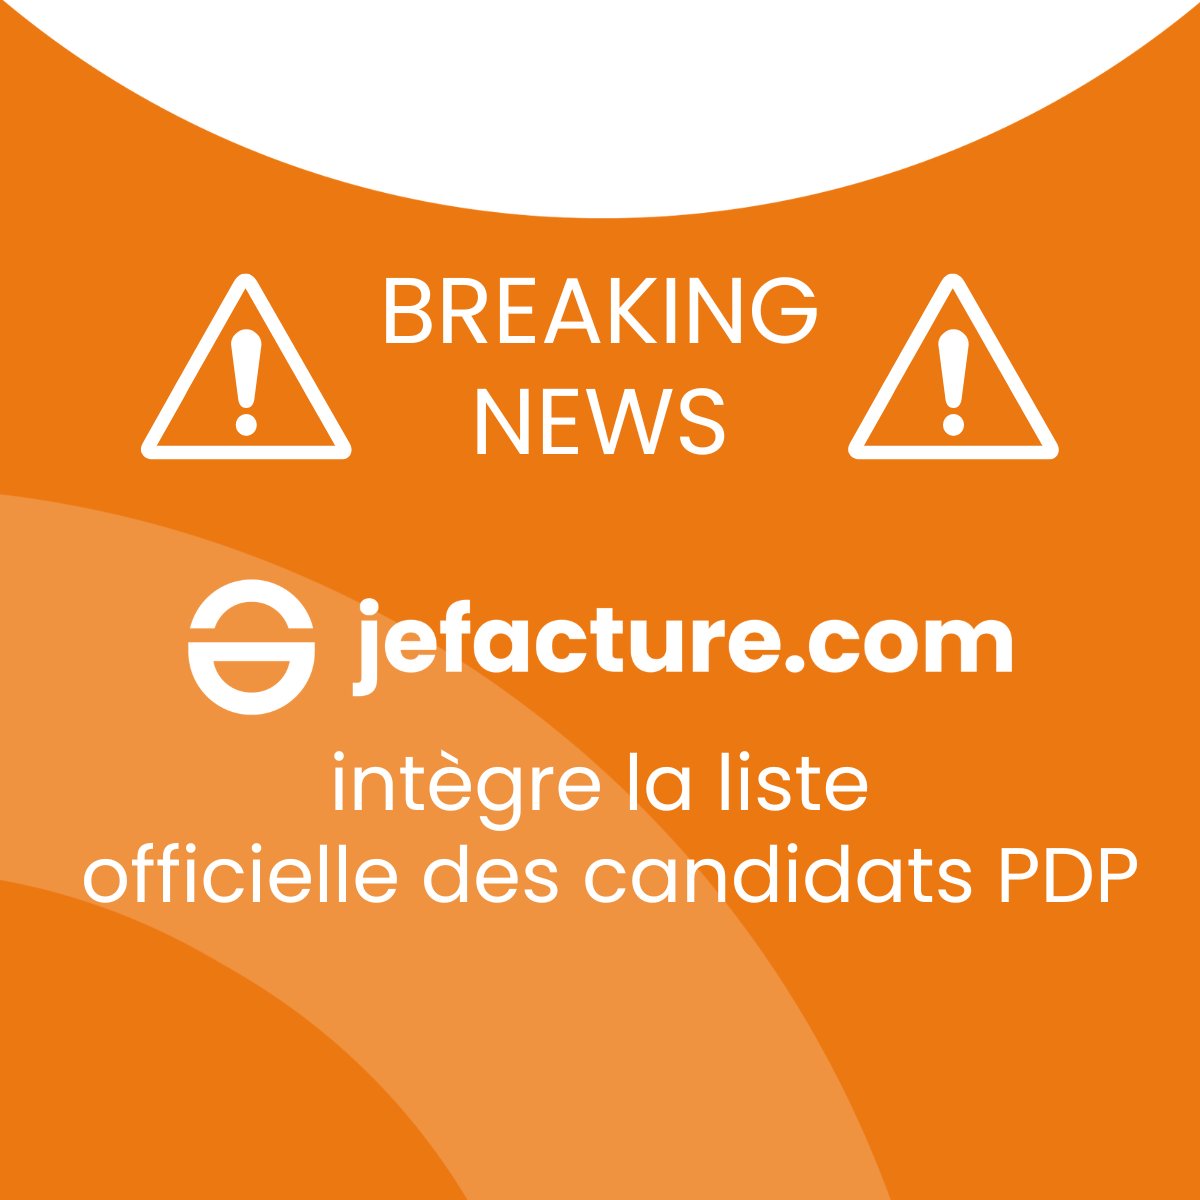 📢 BREAKING NEWS📢

jefacture.com intègre la liste officielle des candidats PDP

Plus d'informations ici : linkedin.com/feed/update/ur…

👉 Lire notre communiqué de presse : ecma-solutions.com/actualites/fac…

#ExpertsComptables #jefacture #PDP #Digitalisation